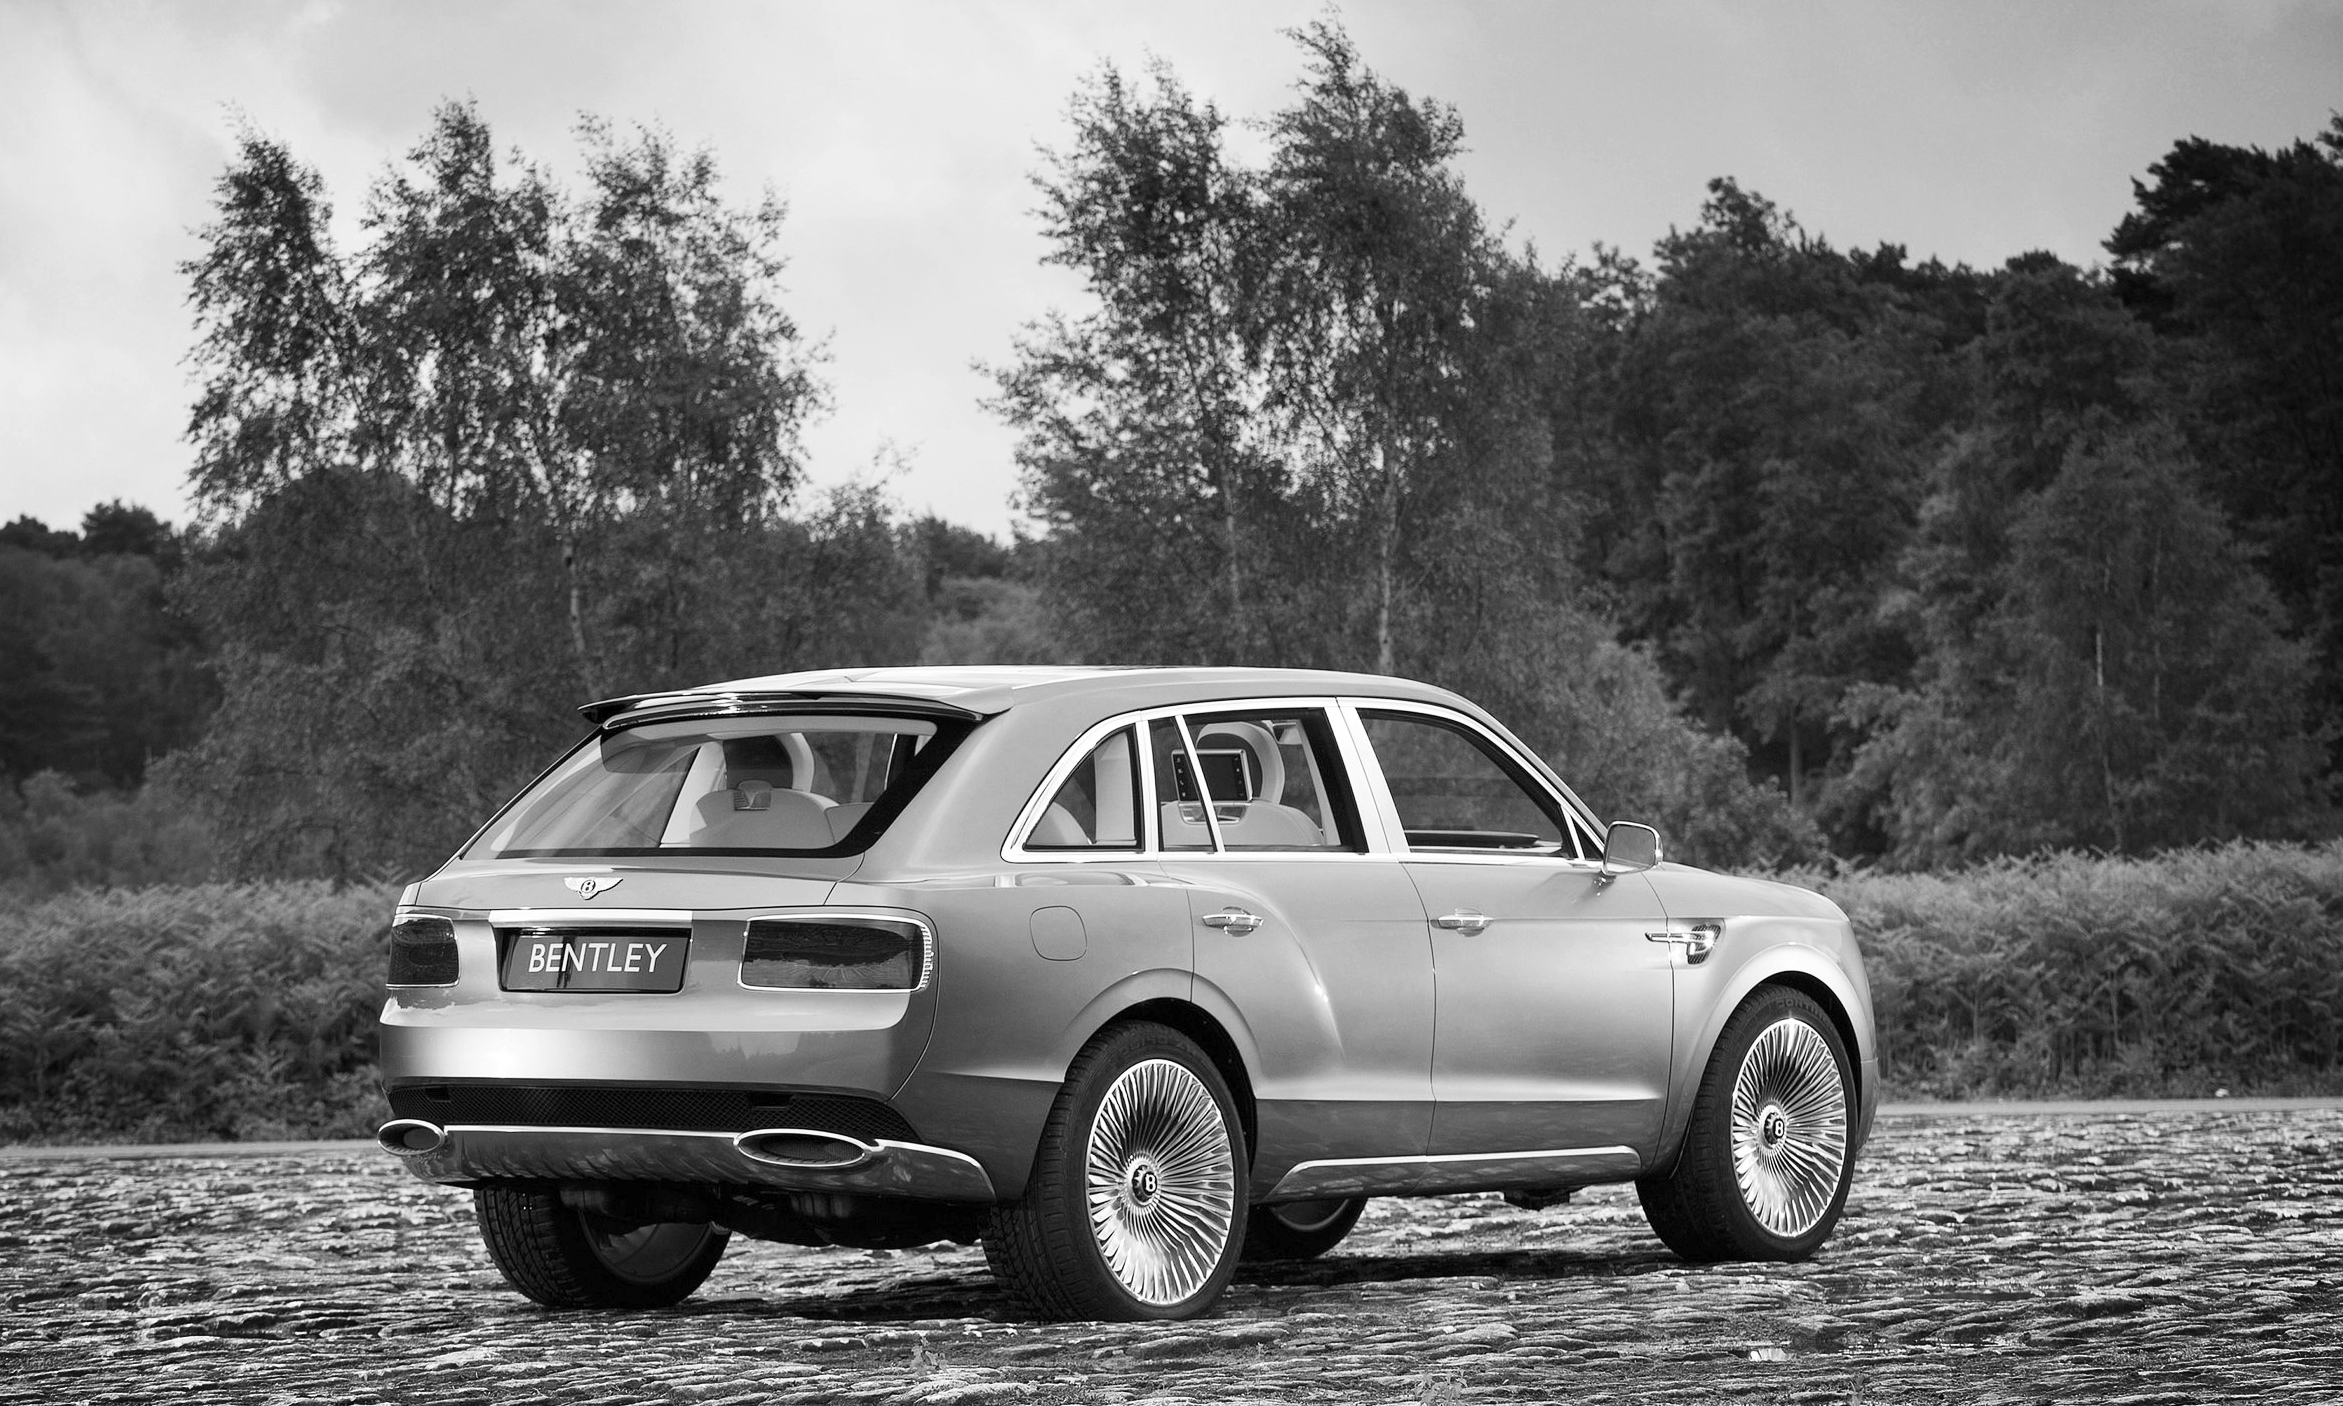  2012 Bentley EXP 9 F SUV Concept 